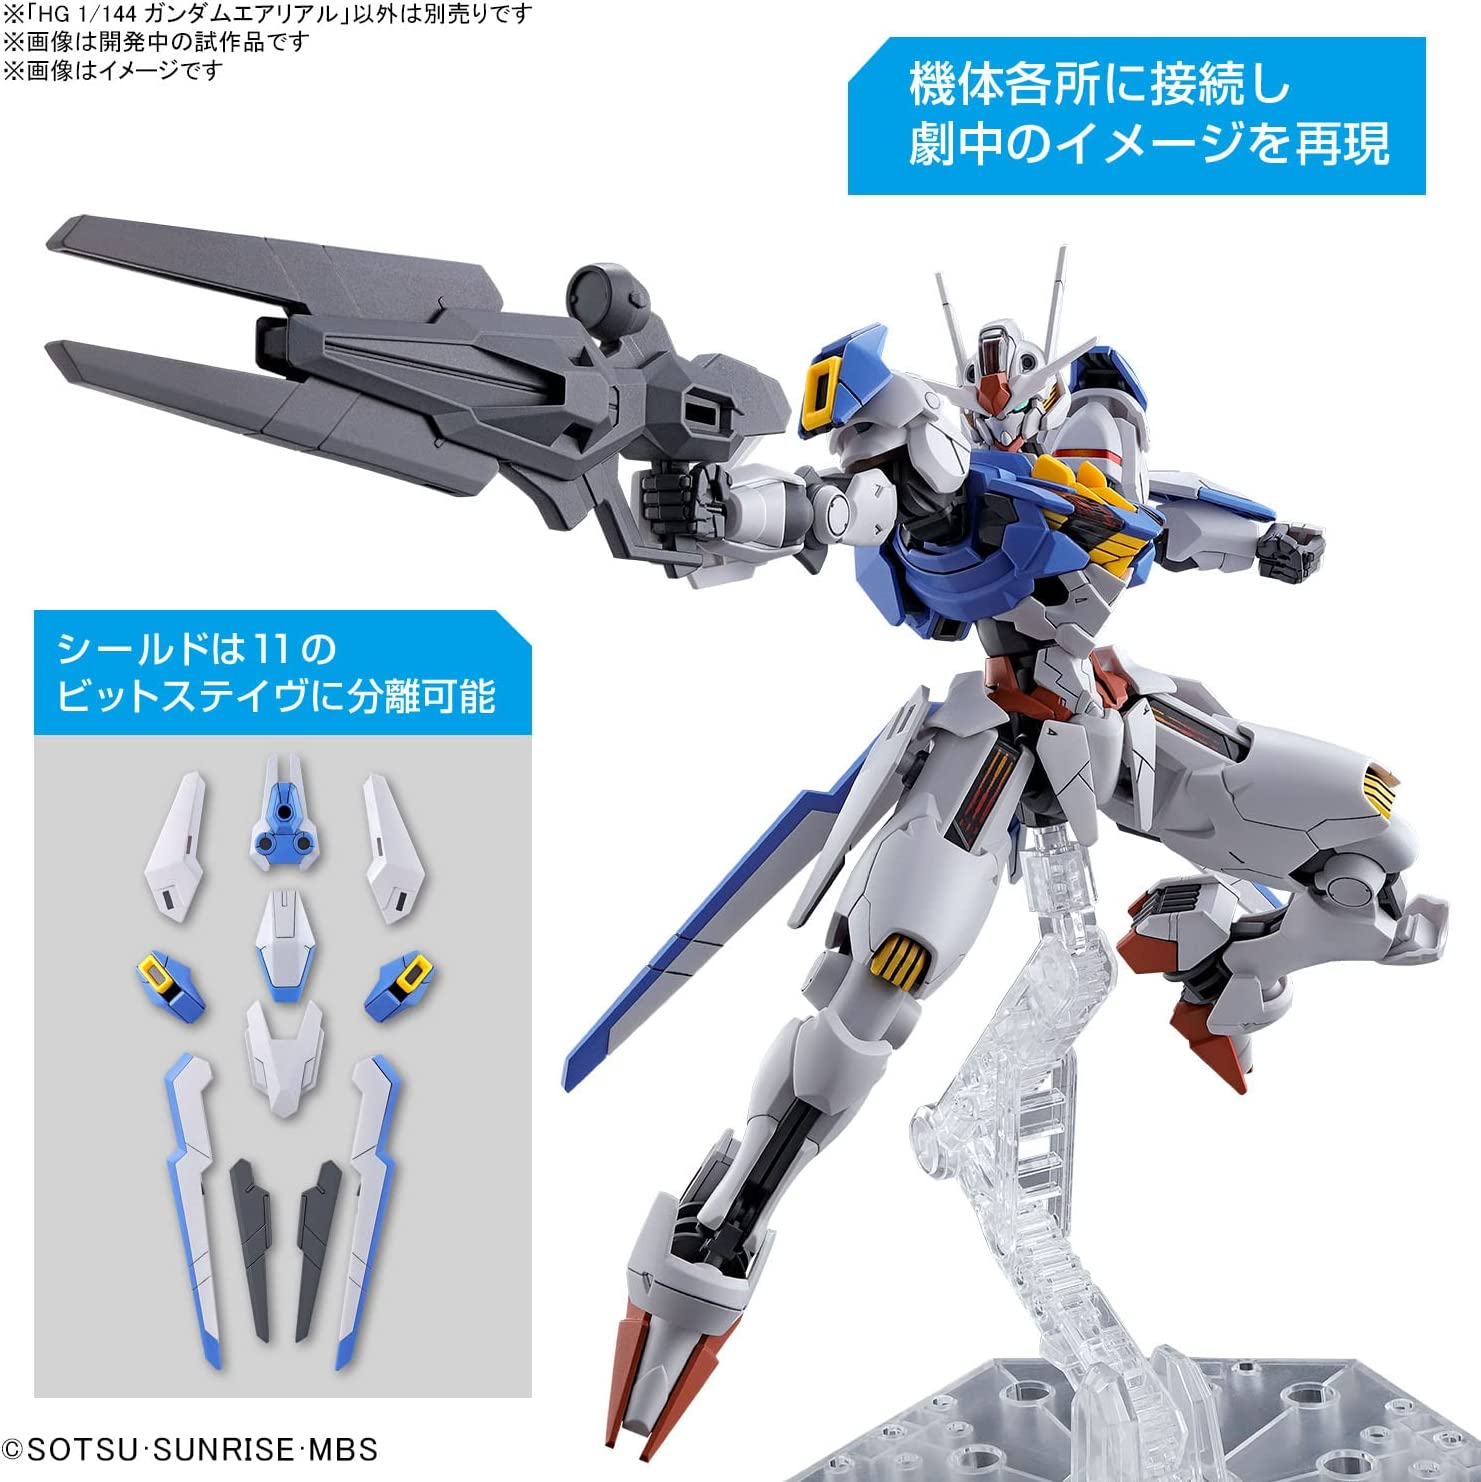 HG Mobile Suit Gundam Mercury Witch Gundam Aerial 1/144 Scale Co